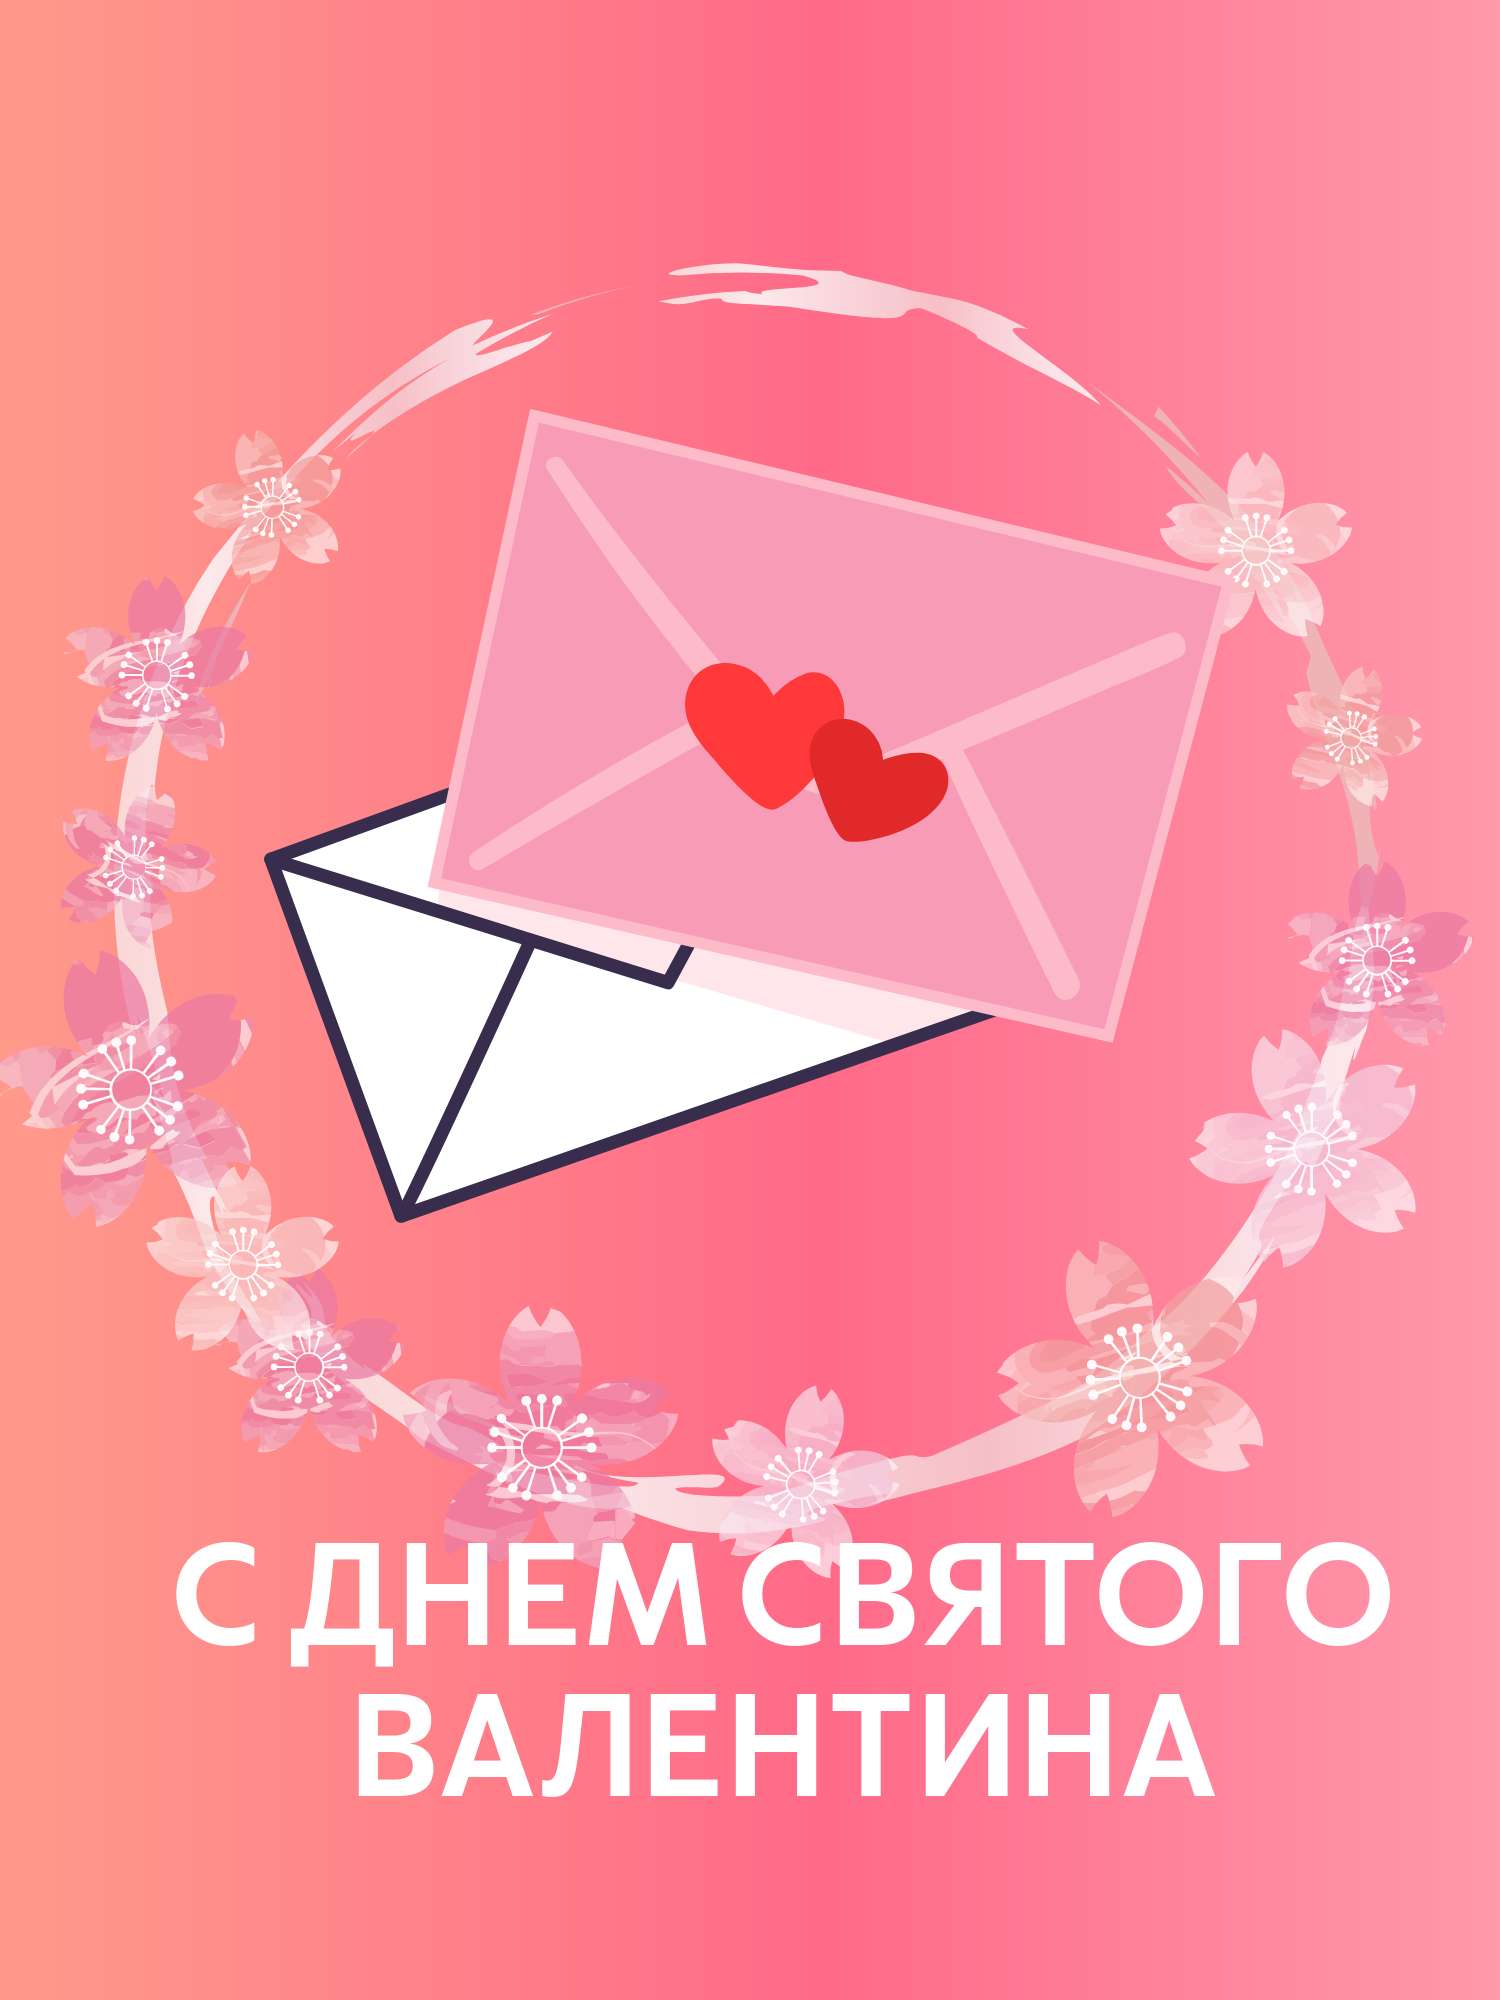 Симпатичная открытка в 14 февраля день святого Валентина с нарисованными конвертами и сердечками